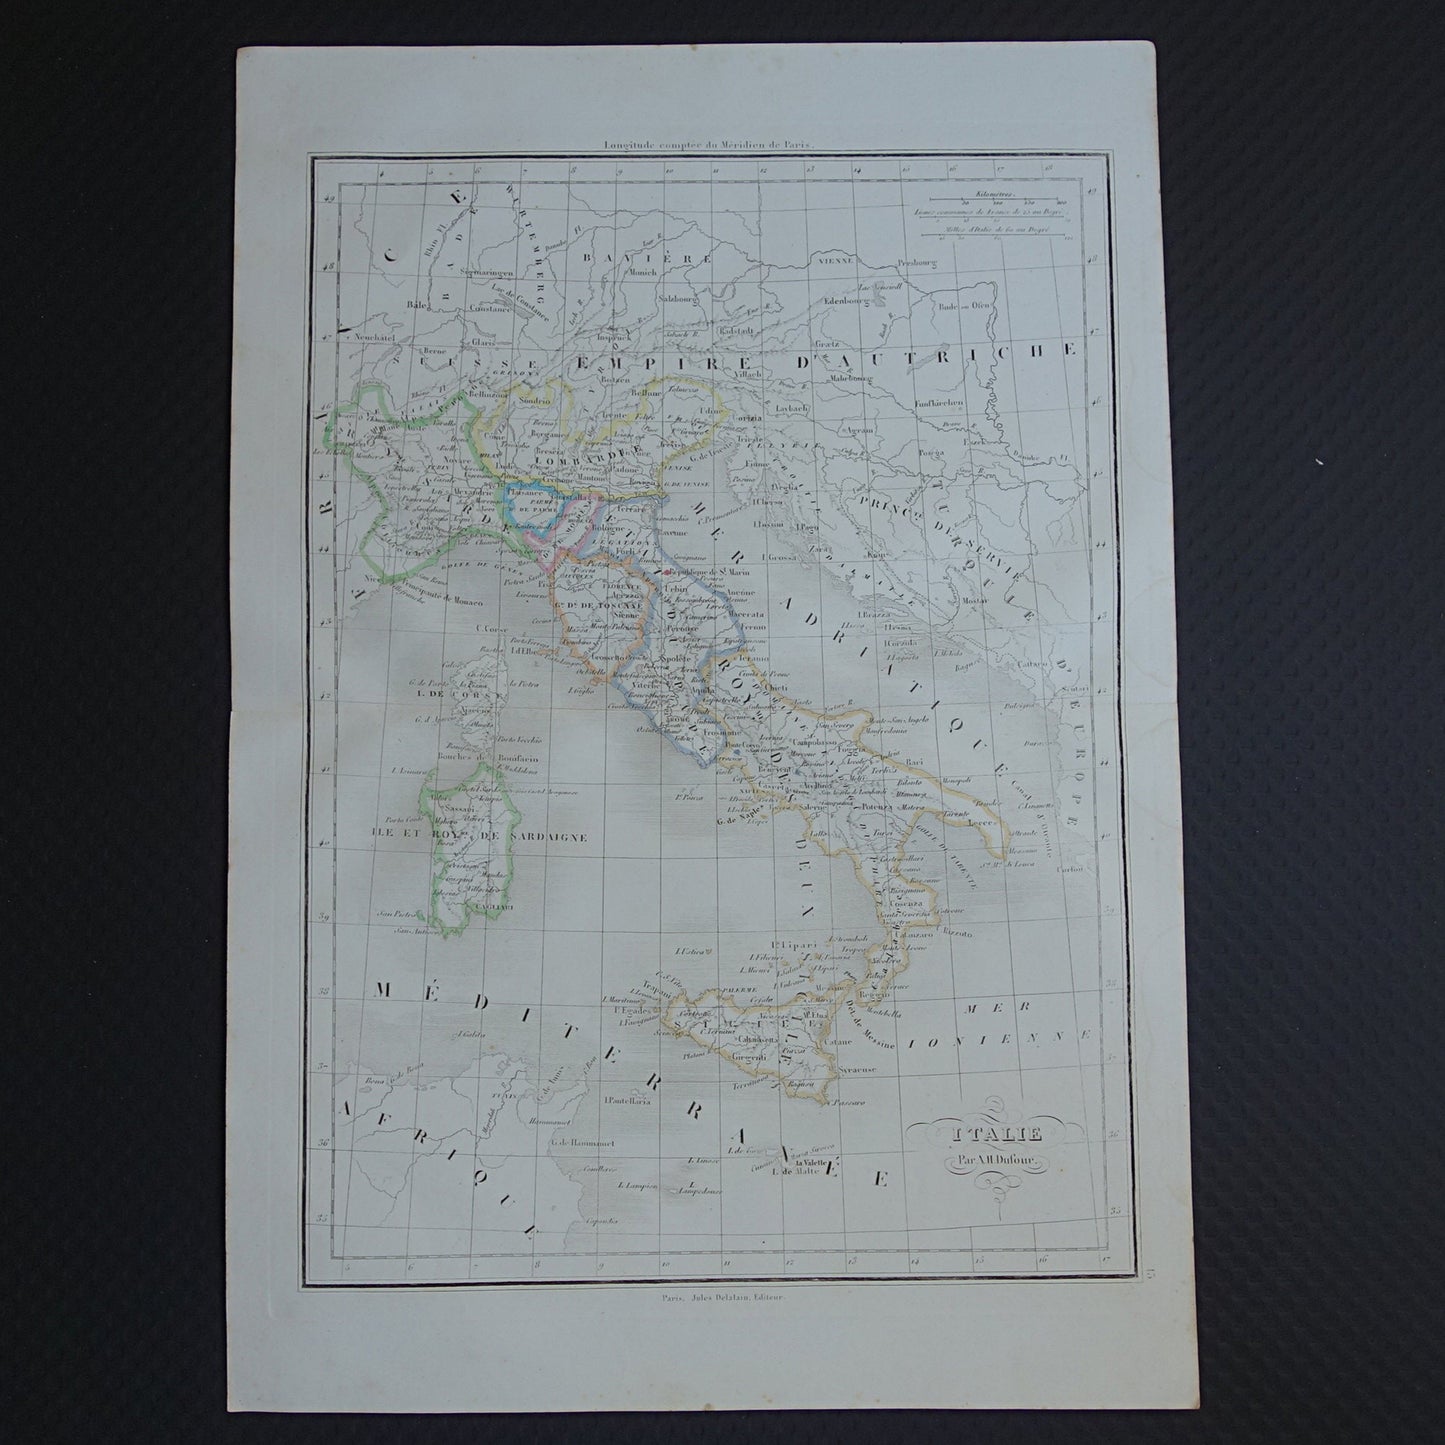 ITALIË Oude kaart van Italië uit 1849 originele 170+ jaar oude handgekleurde Franse landkaart